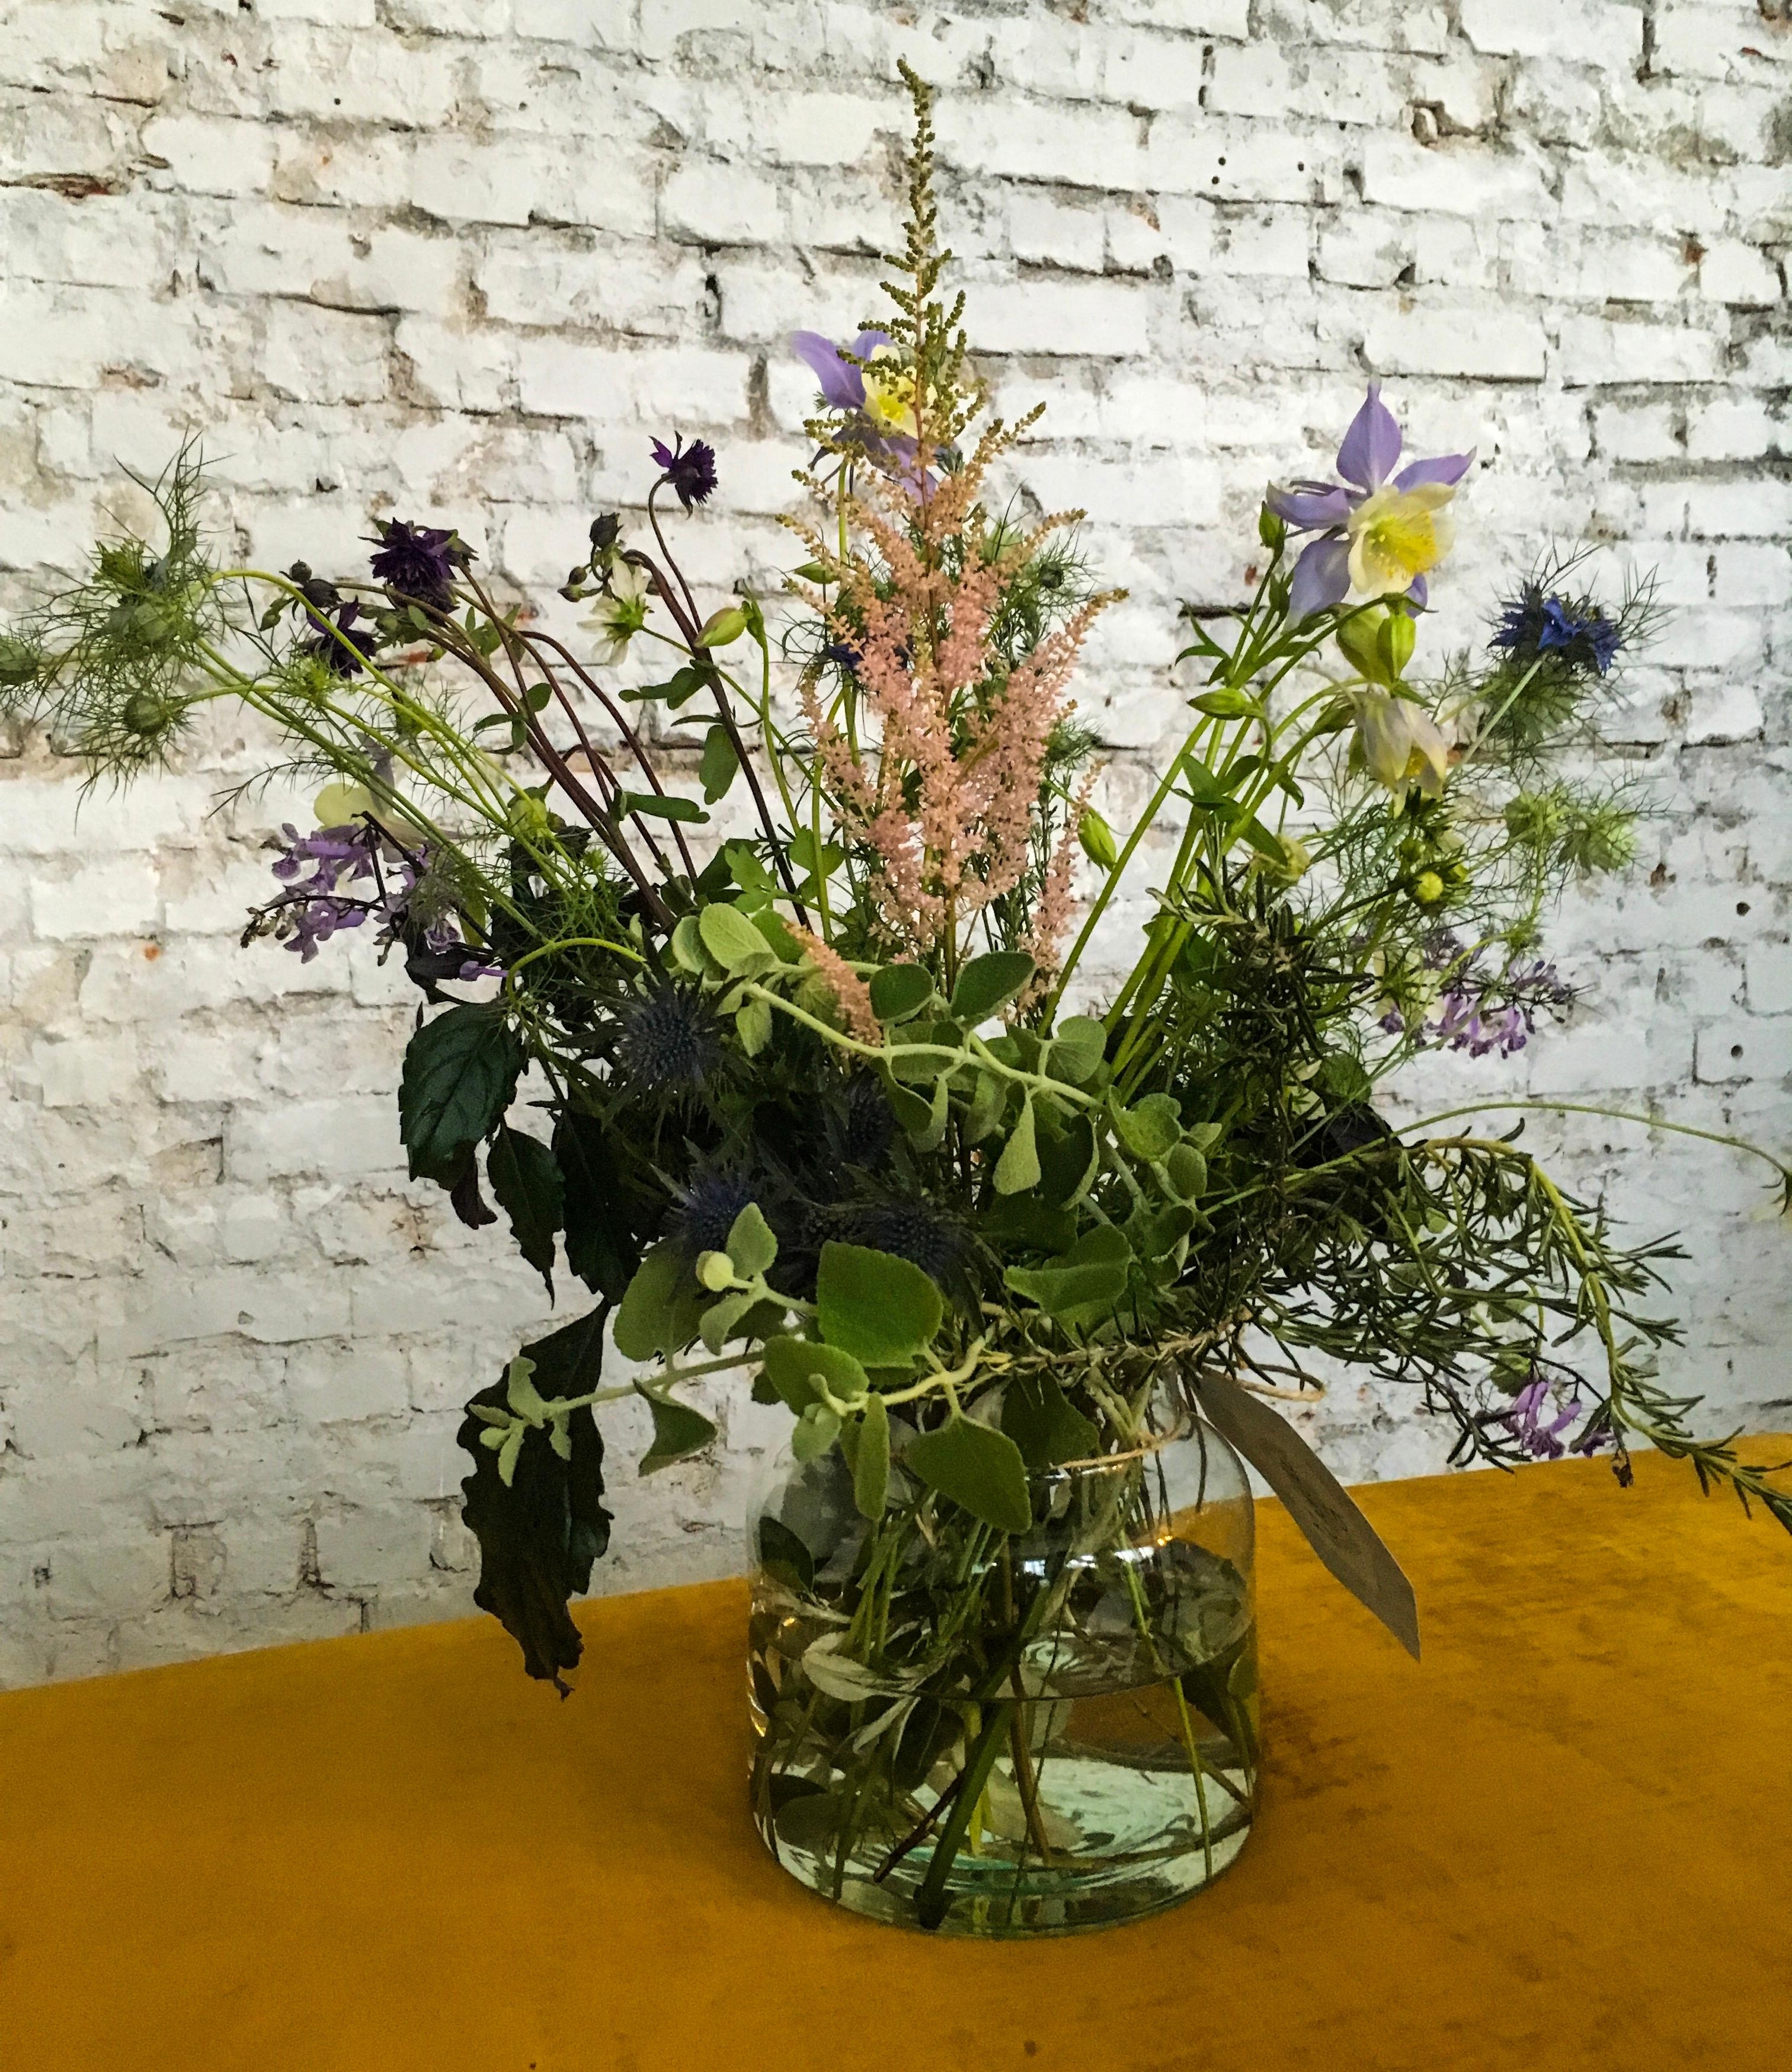 #freshflowerfriday mit wunderschönen Wiesenblumen vom #bombaysapphire Gin-Workshop 
#freshflowers #vase #steinwand